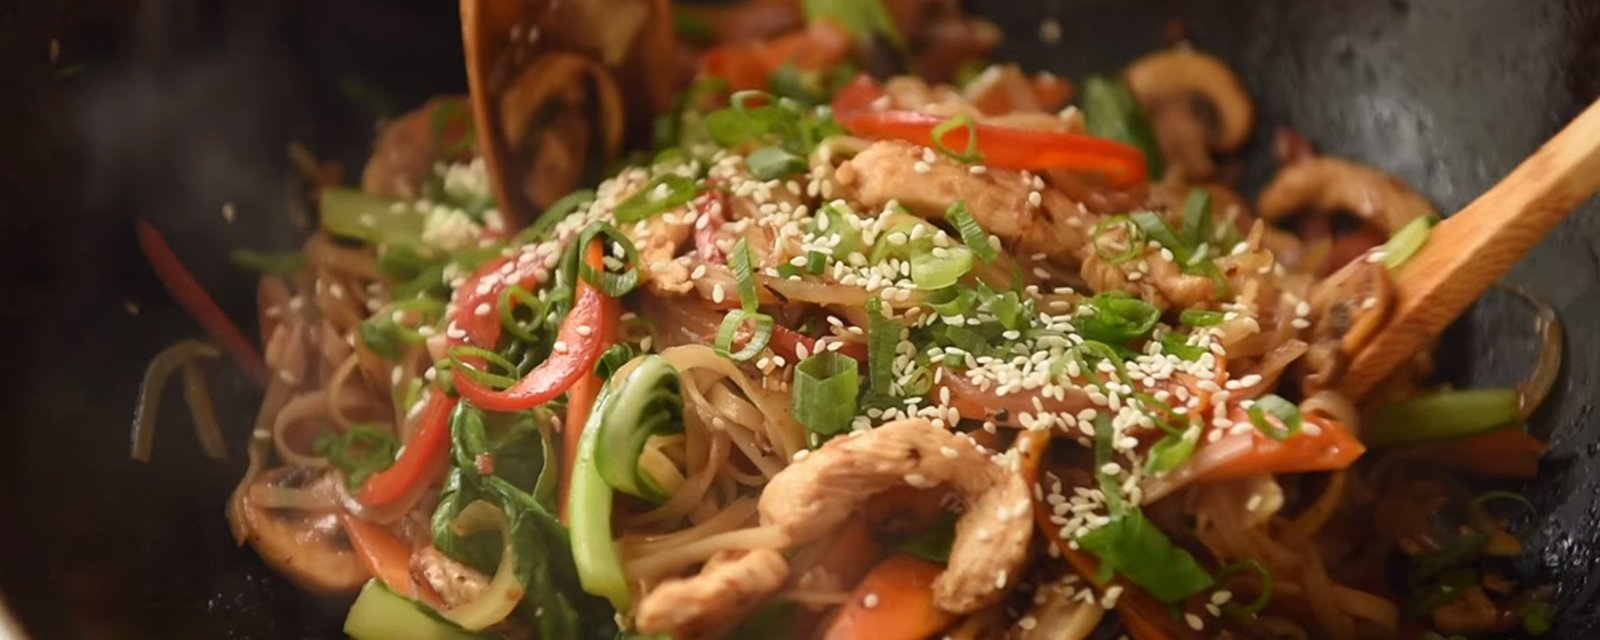 Sauté de poulet asiatique, un souper de semaine rapide, mais surtout très savoureux!